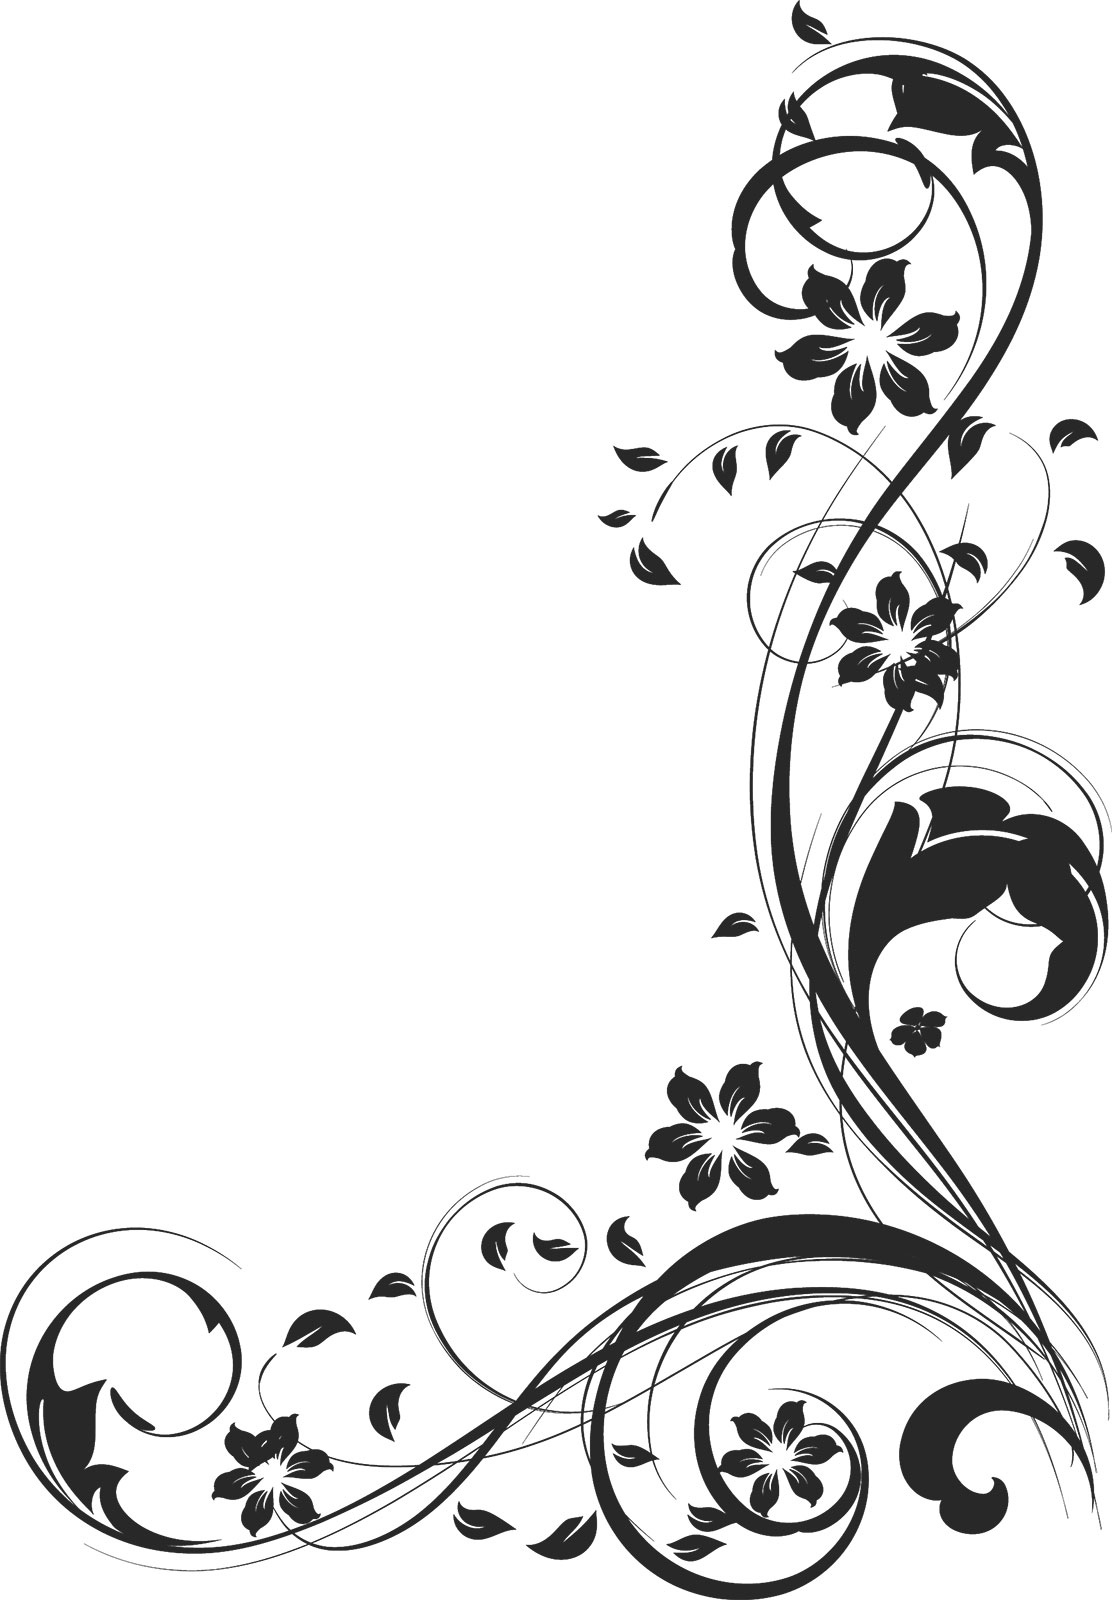 白黒 モノクロの花のイラスト フリー素材 ライン線 コーナー用no 878 白黒 茎葉 曲線